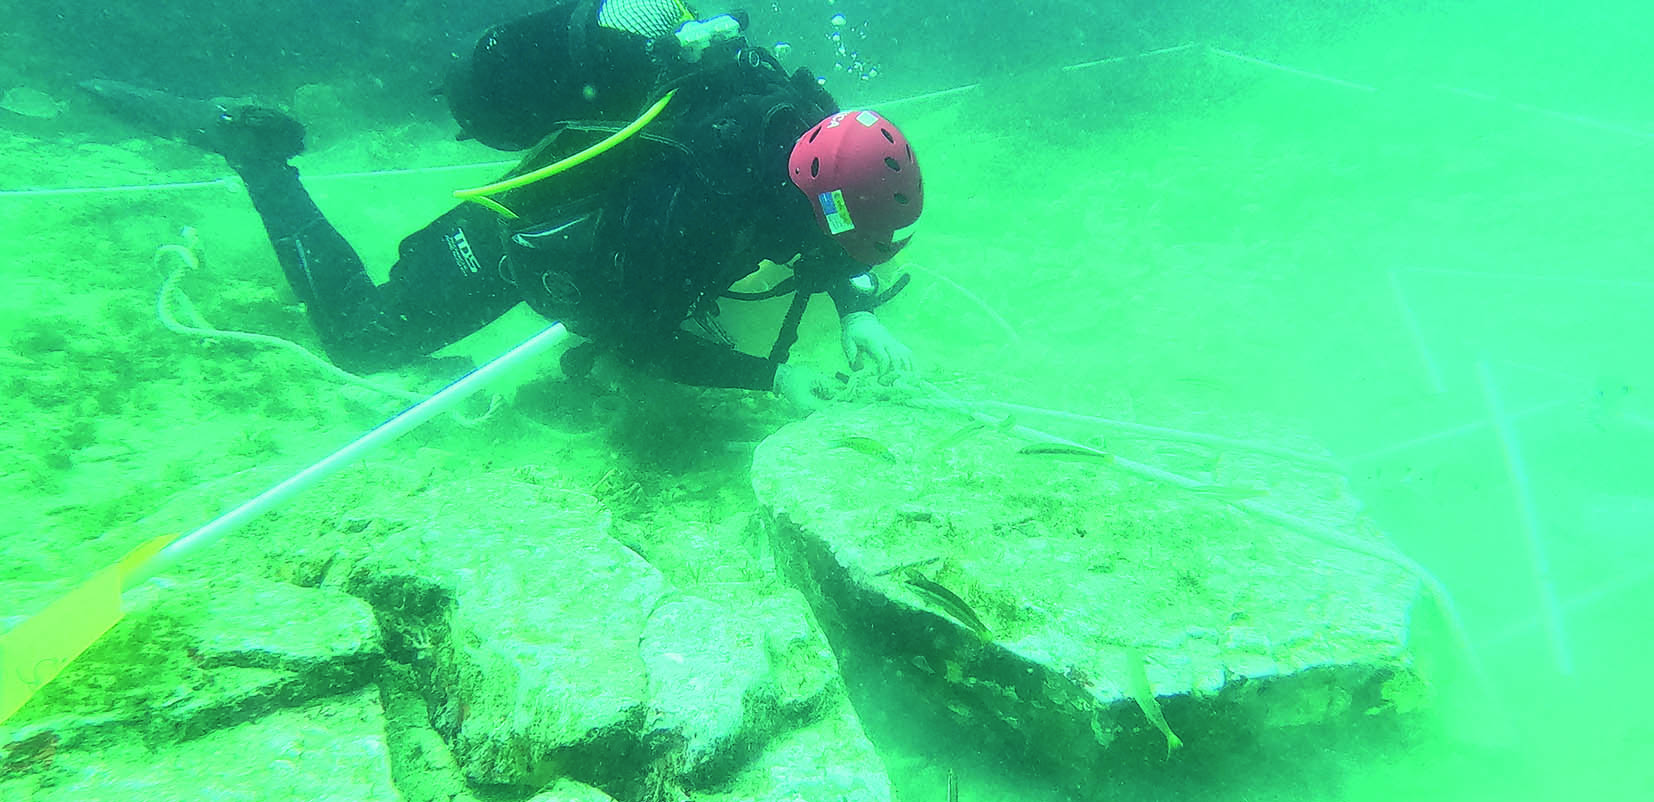 Realizando mediciones de un yacimiento arqueológico submarino.